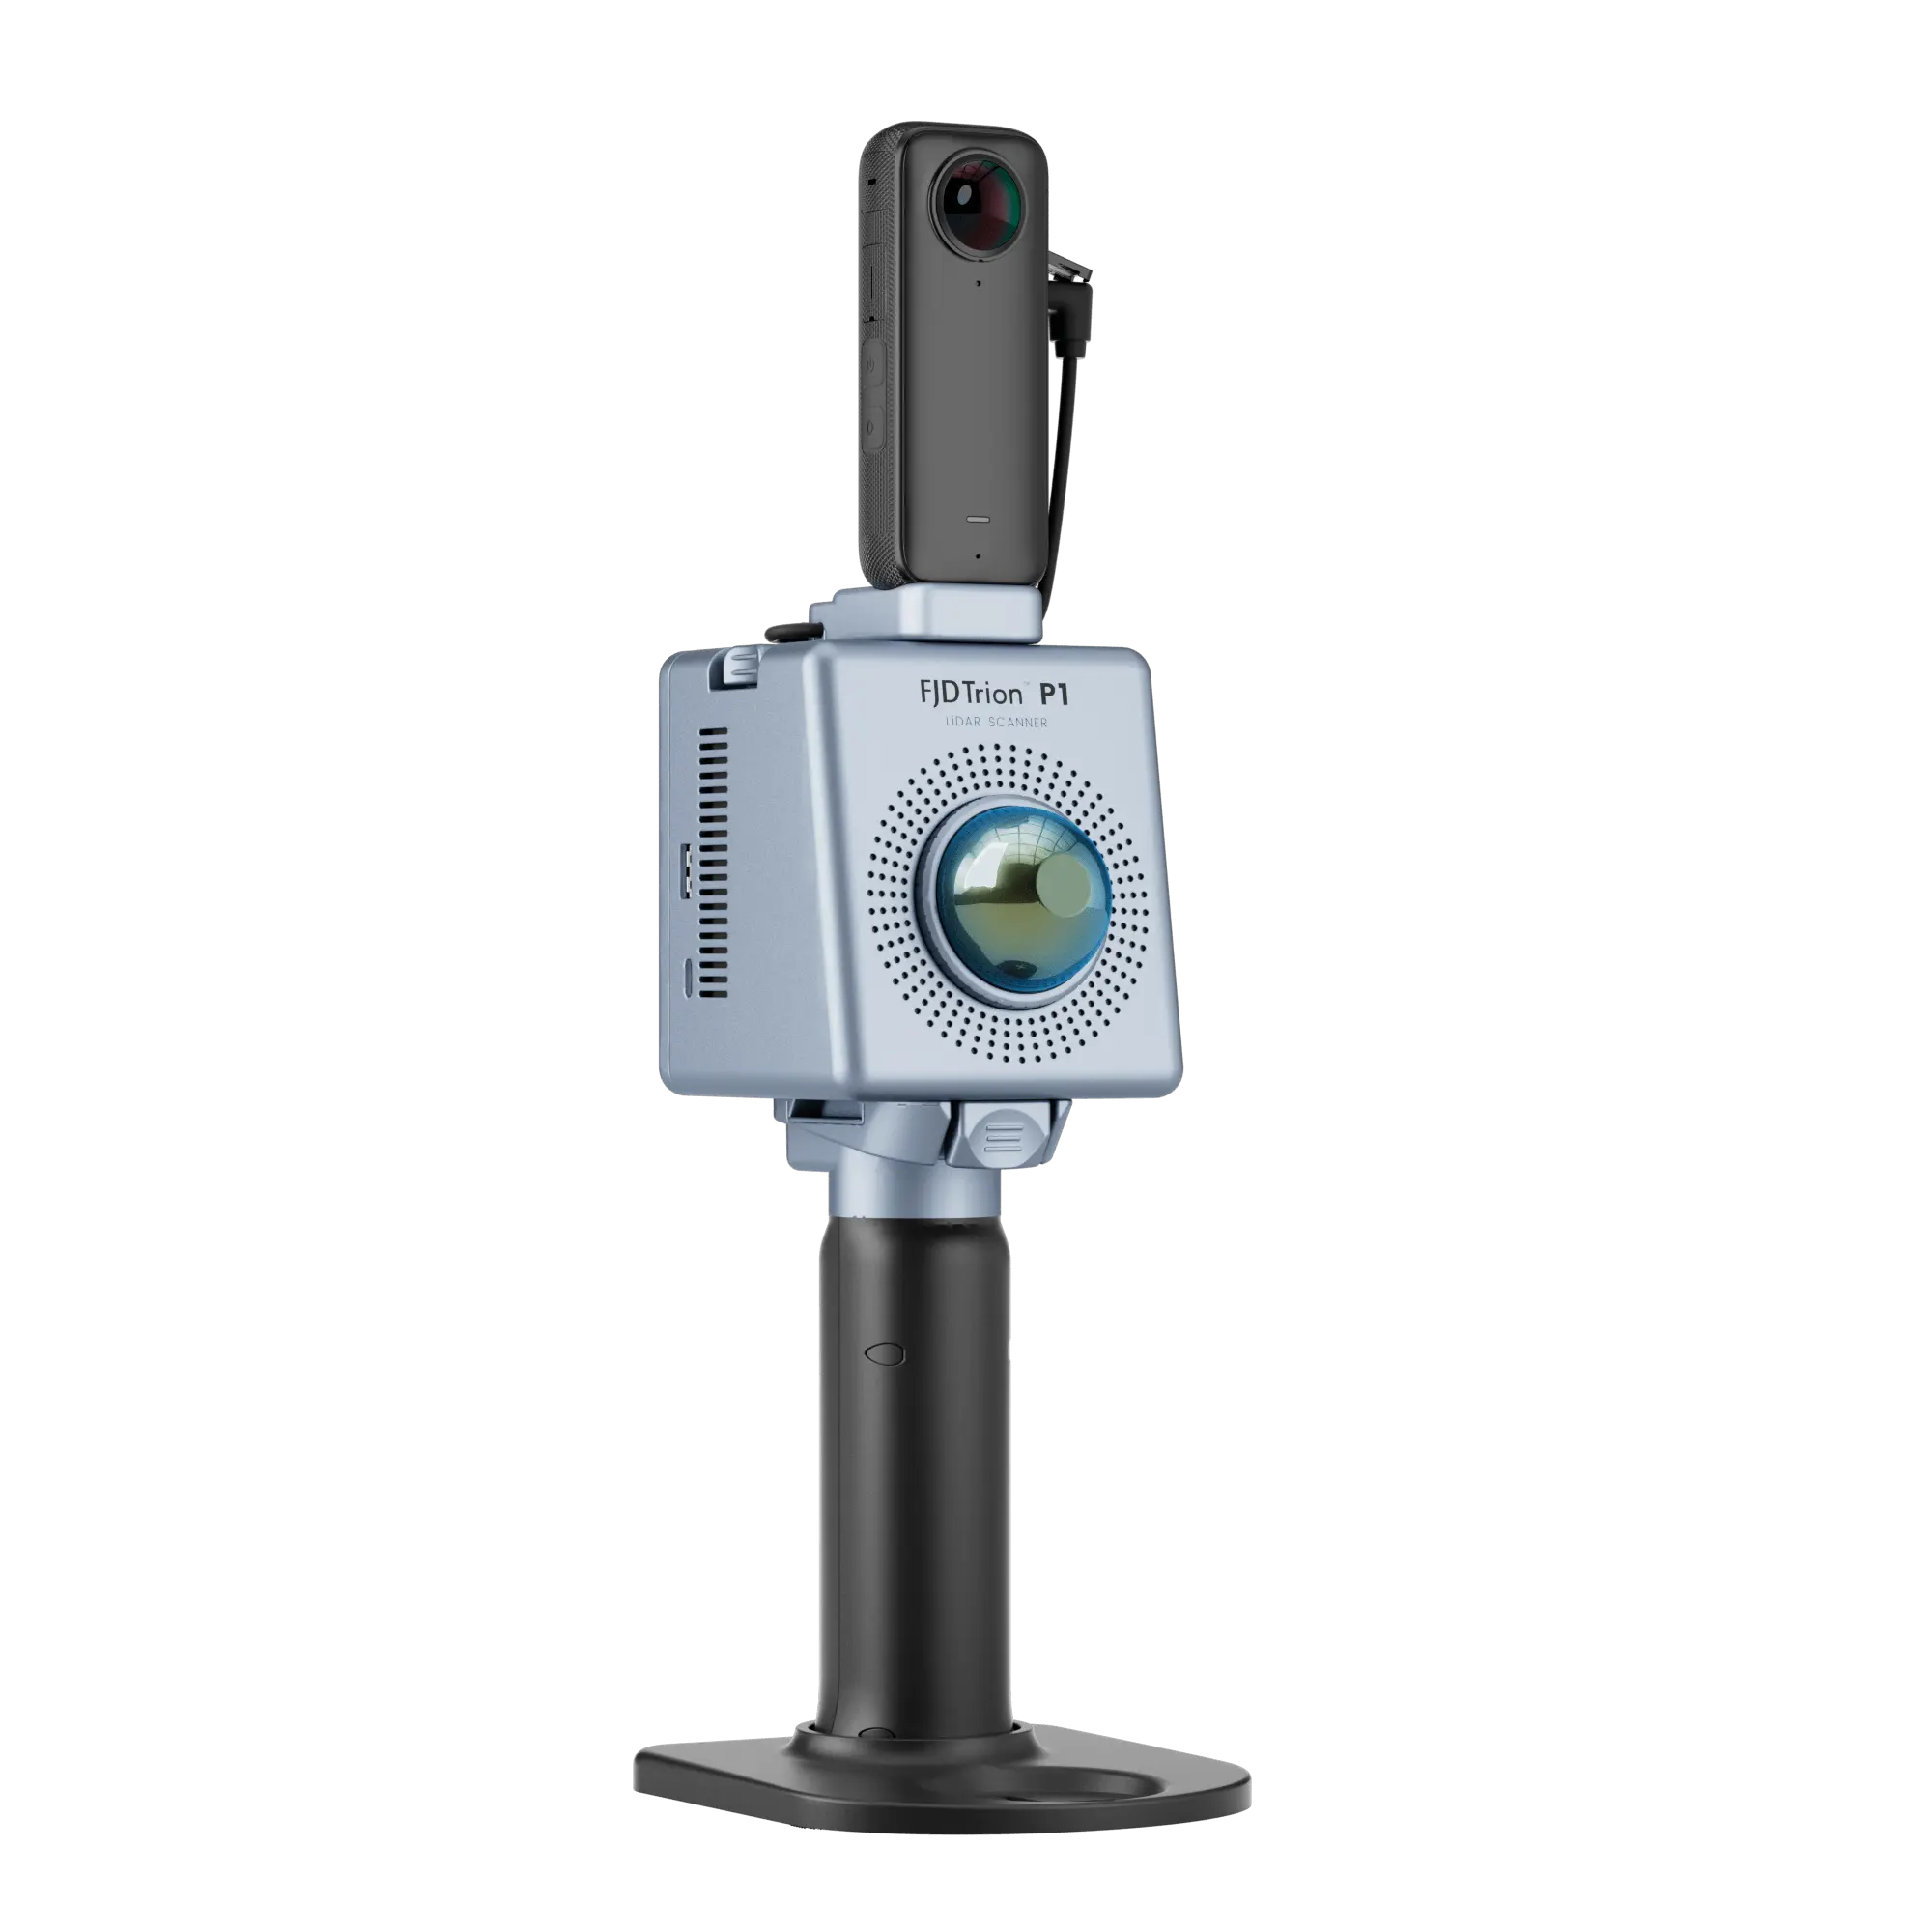 FJD Trion P1 3D Handheld LiDAR Scanner